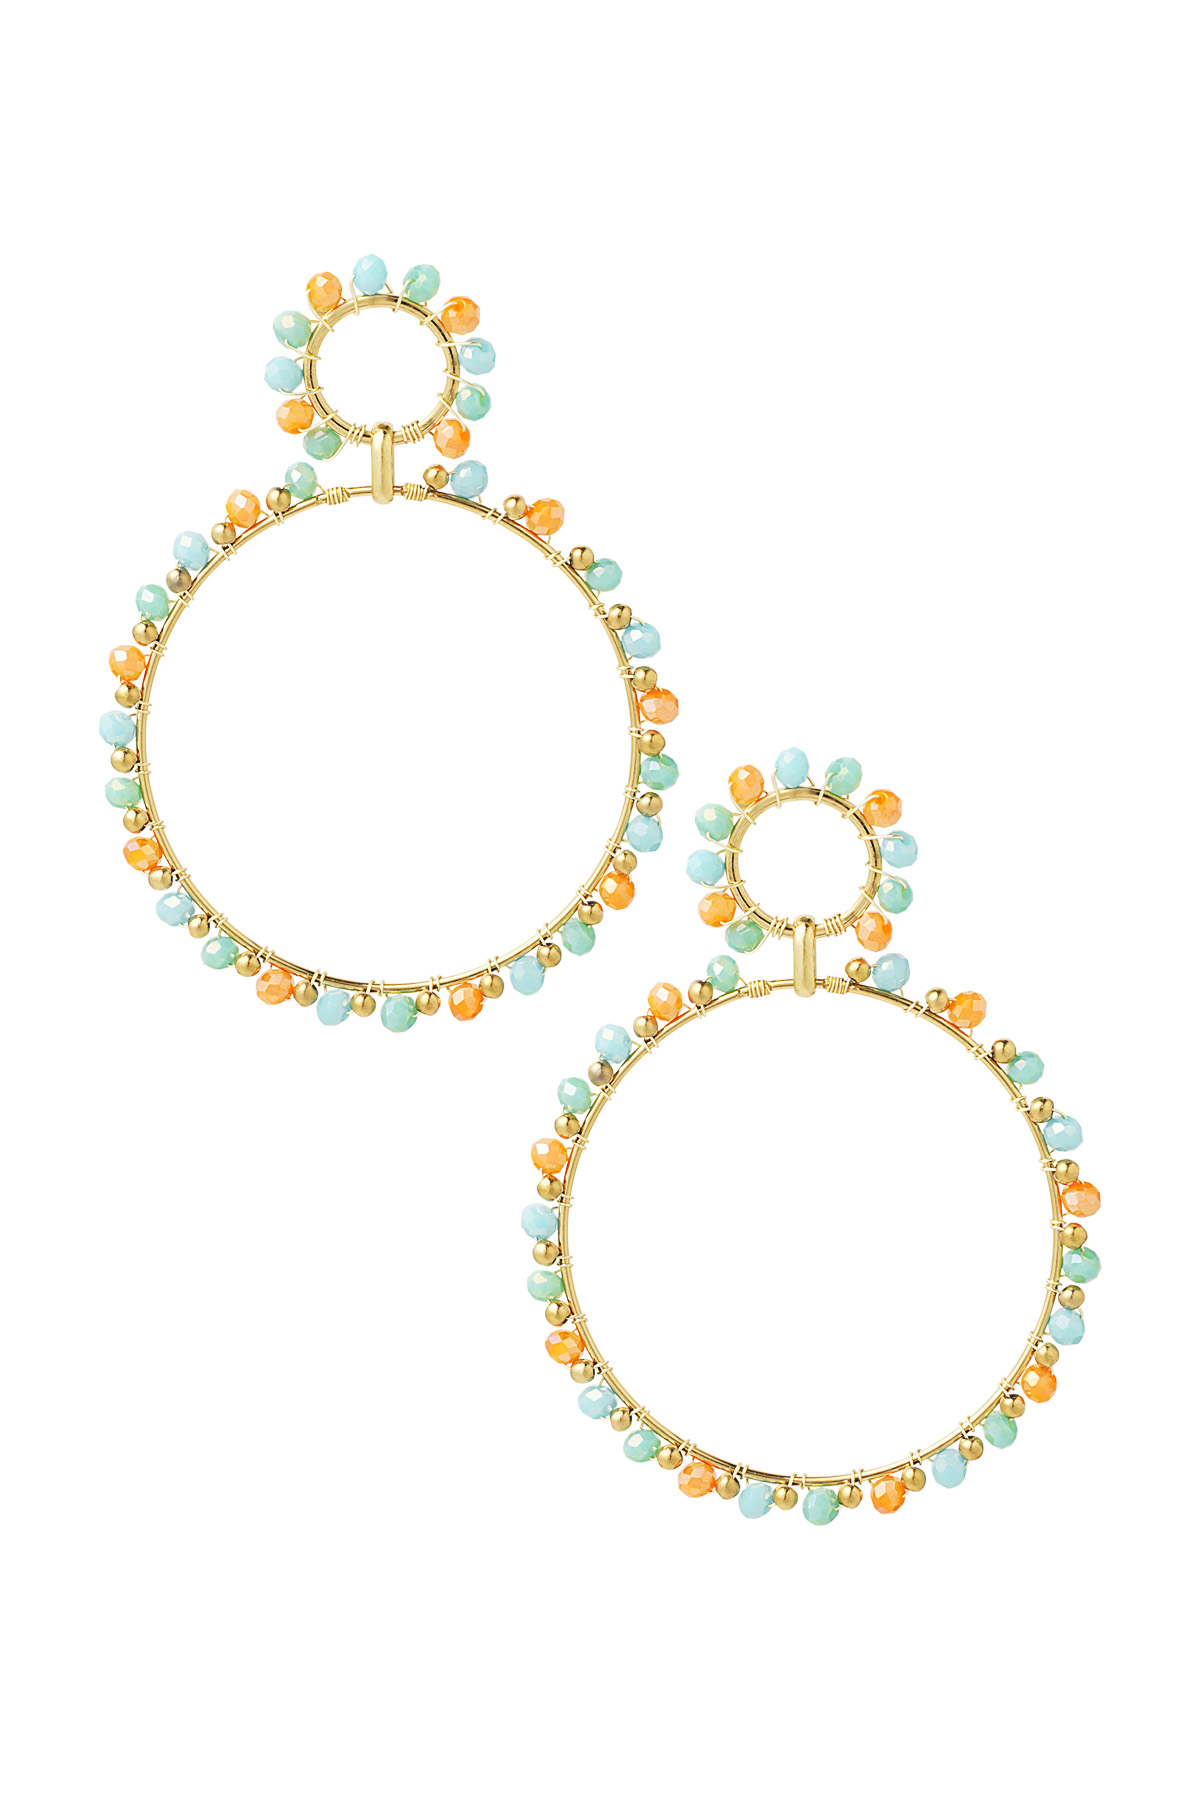 Oorbellen dubbele kralen rondjes - goud/blauw/oranje 